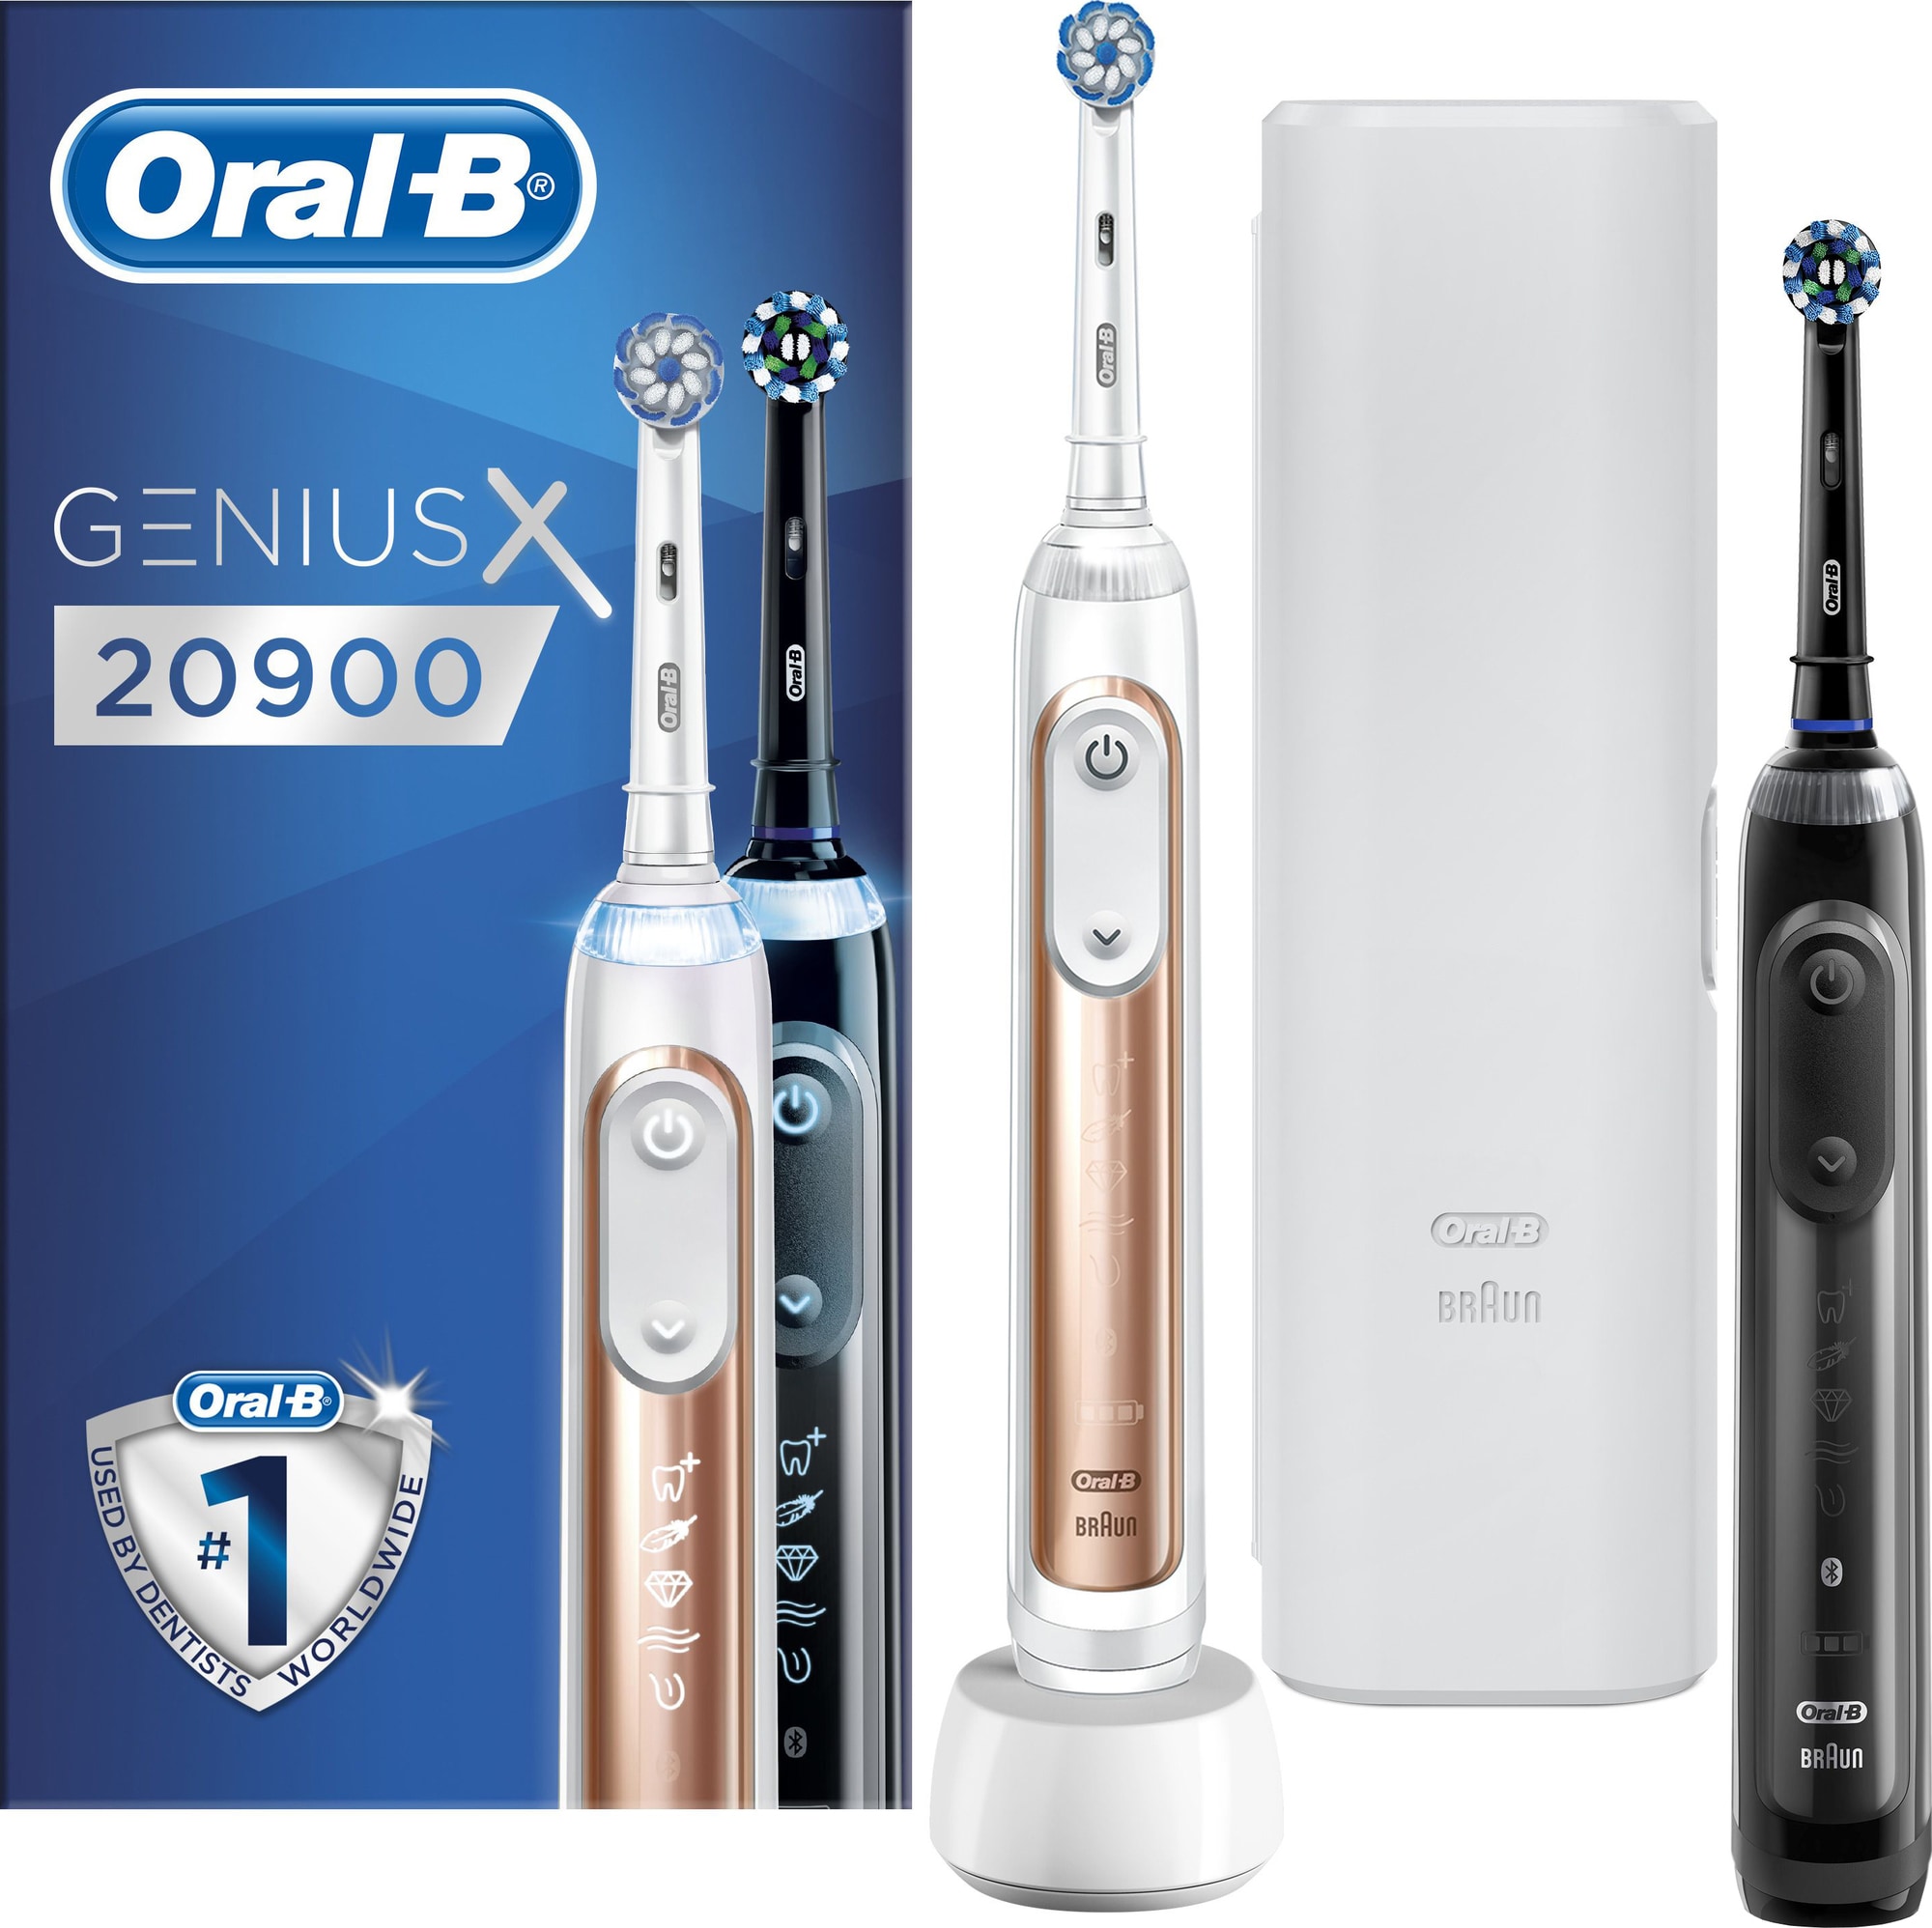 Oral-B Genius X sähköhammasharja Double Body Special Edition 20900 -  Gigantti verkkokauppa